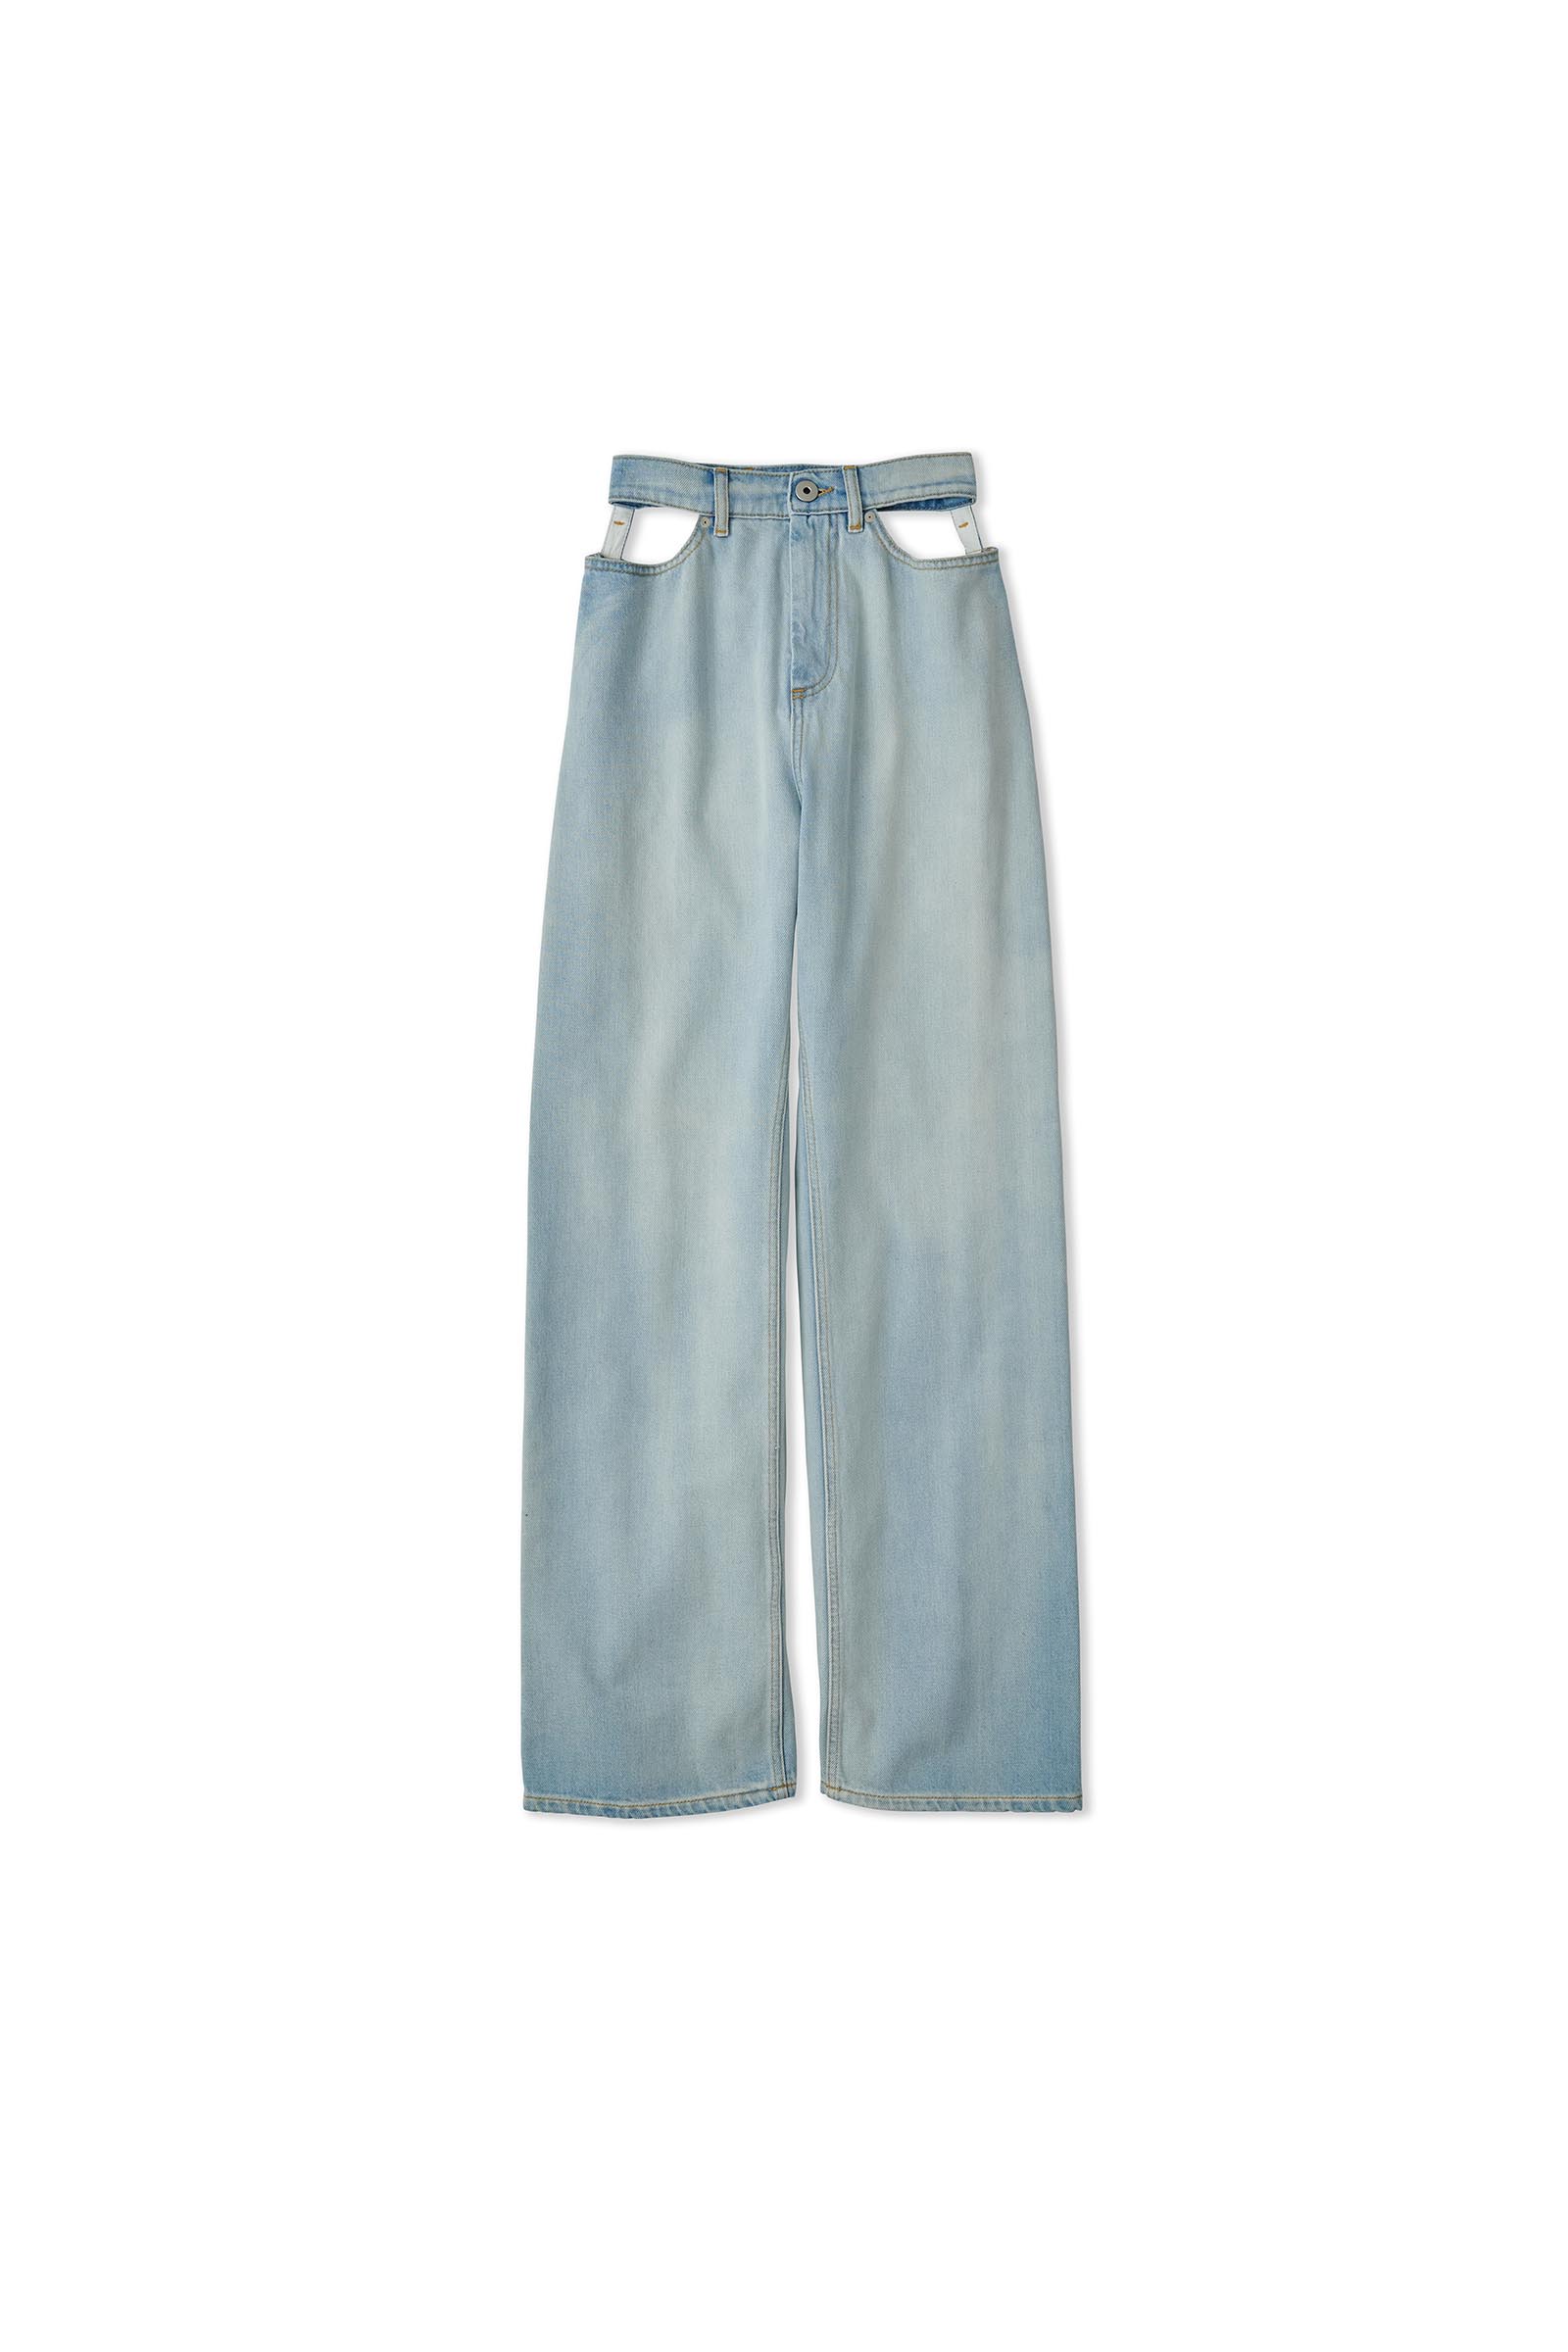 Maison Margiela / Décortiqué jeans – carol ONLINE STORE